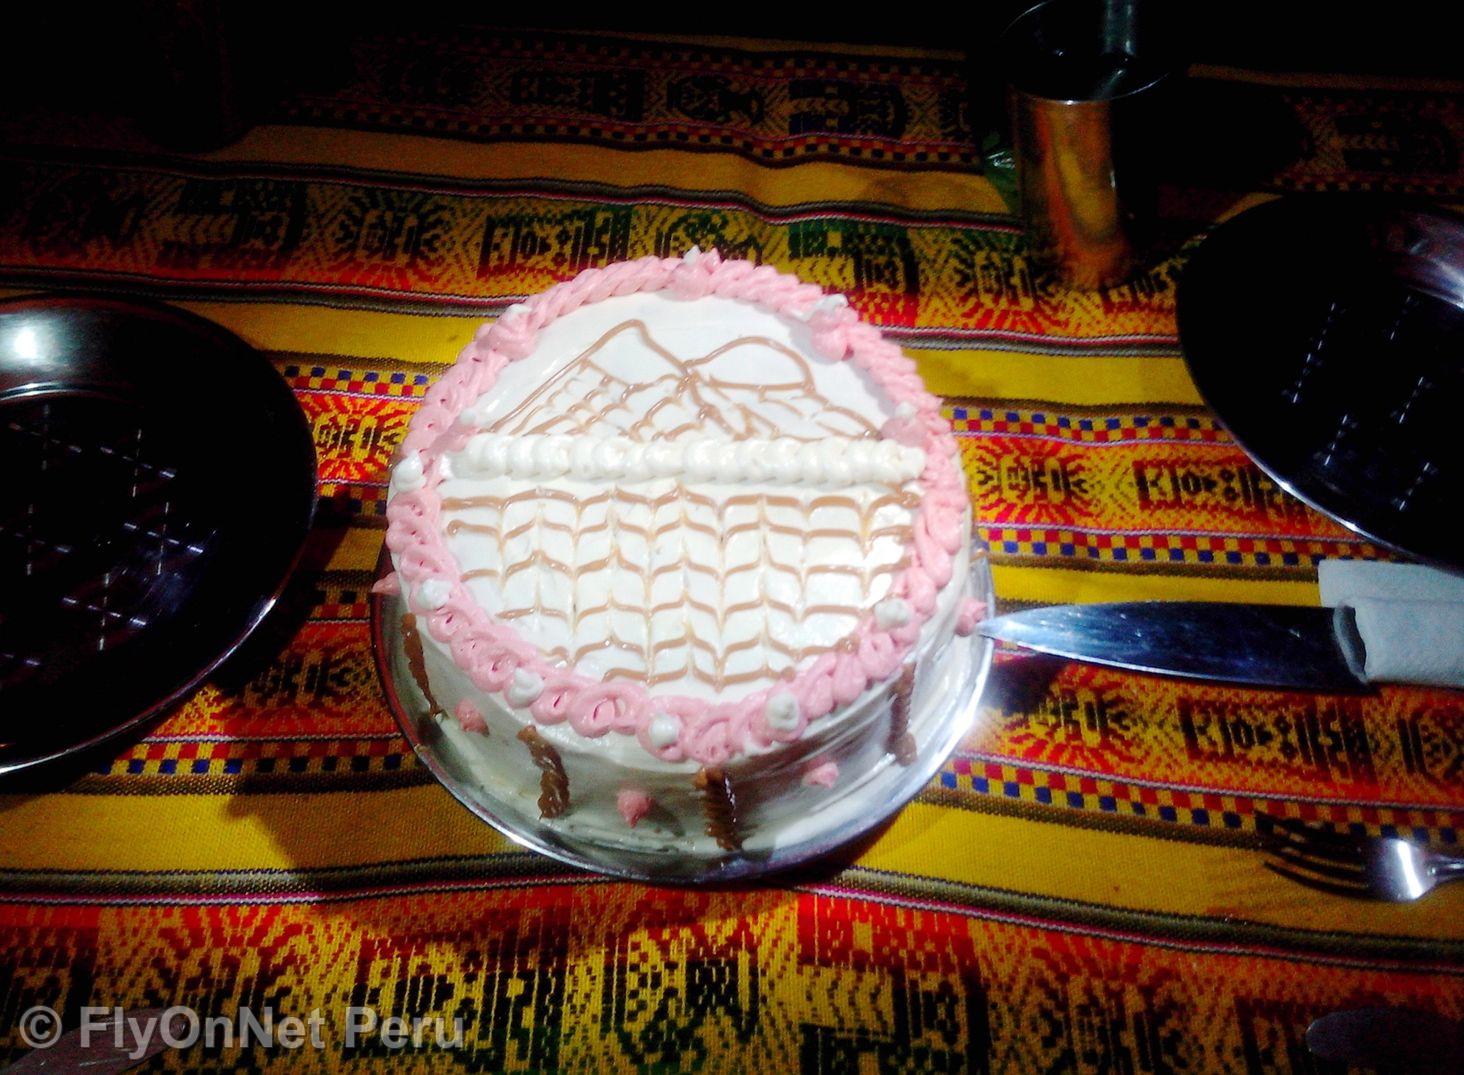 Álbum de fotos: Torta de cumpleaños durante el trek